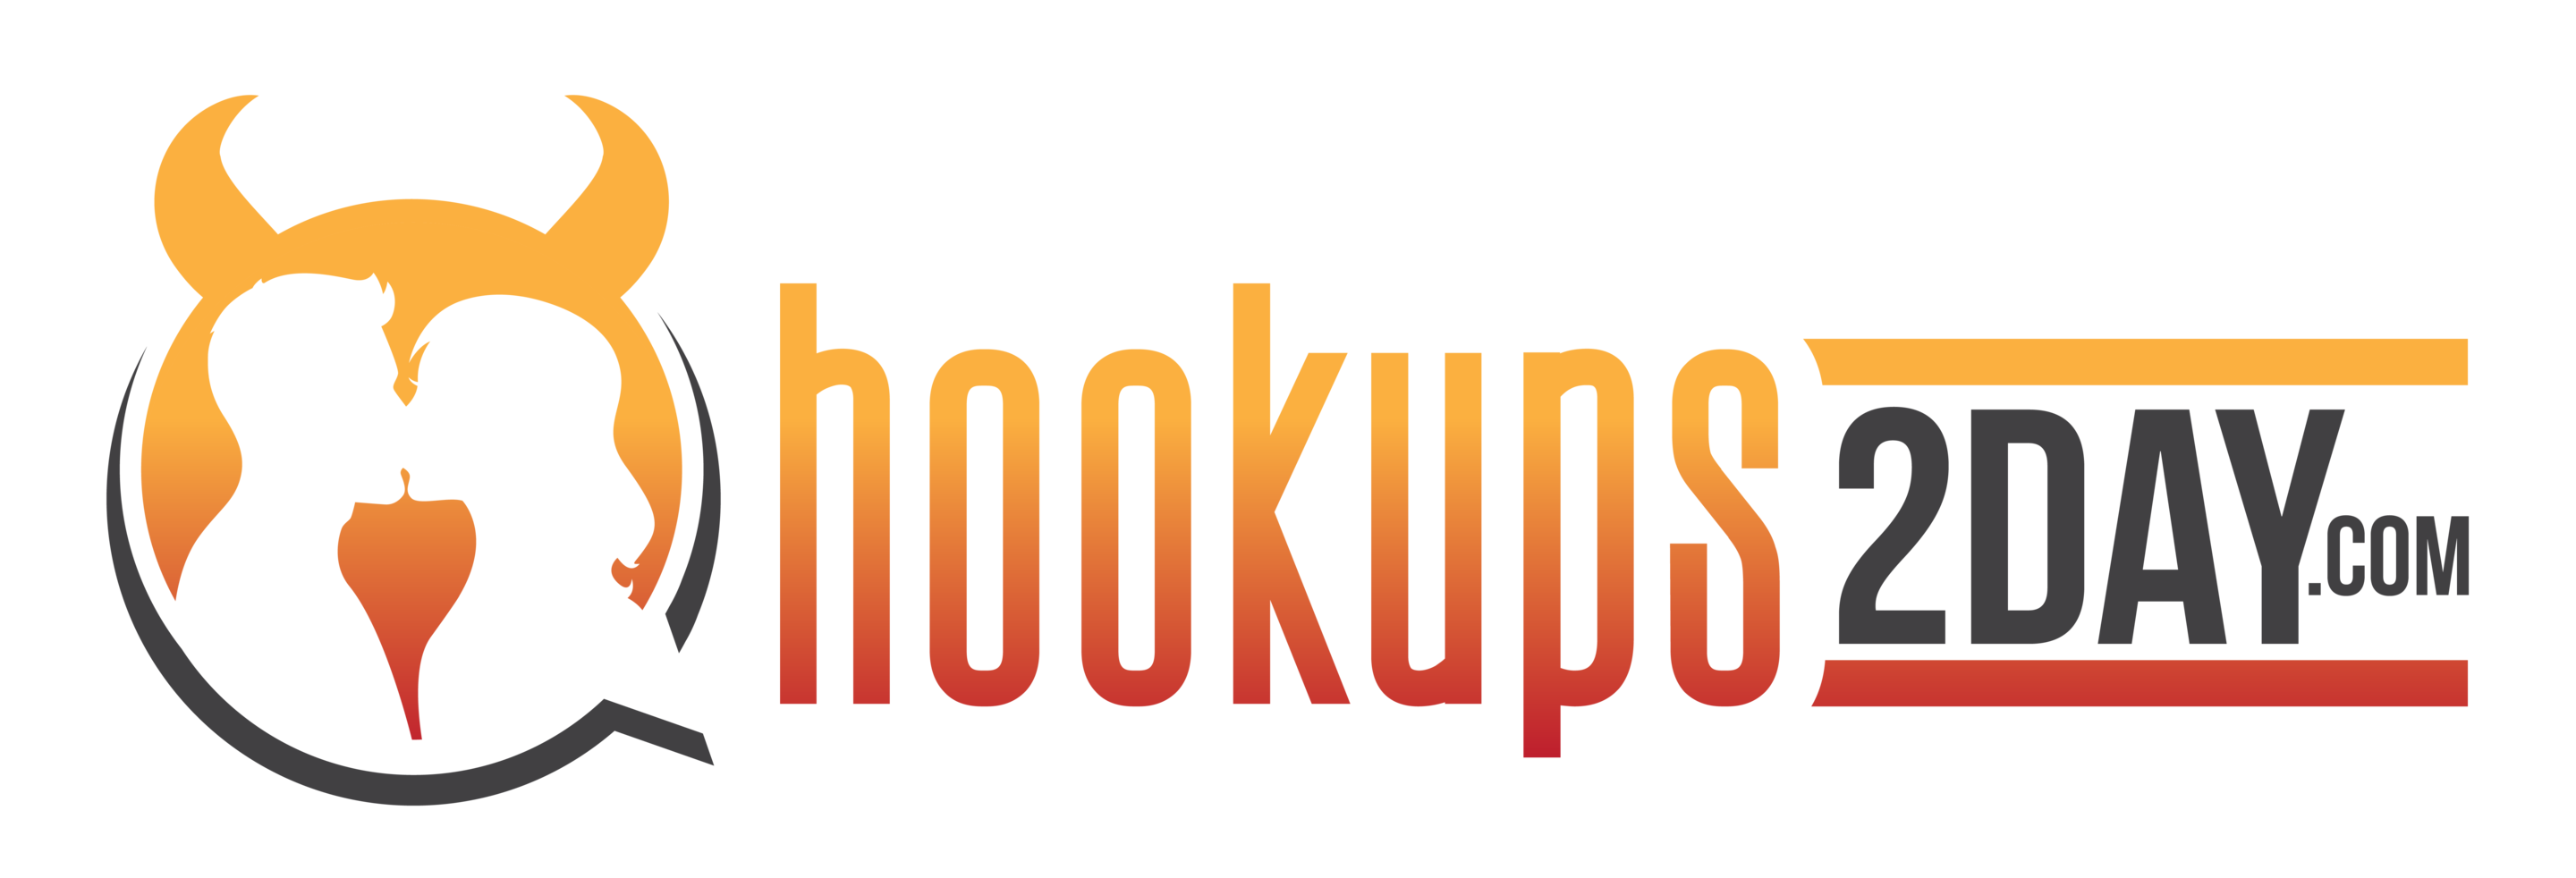 hookups2day.com